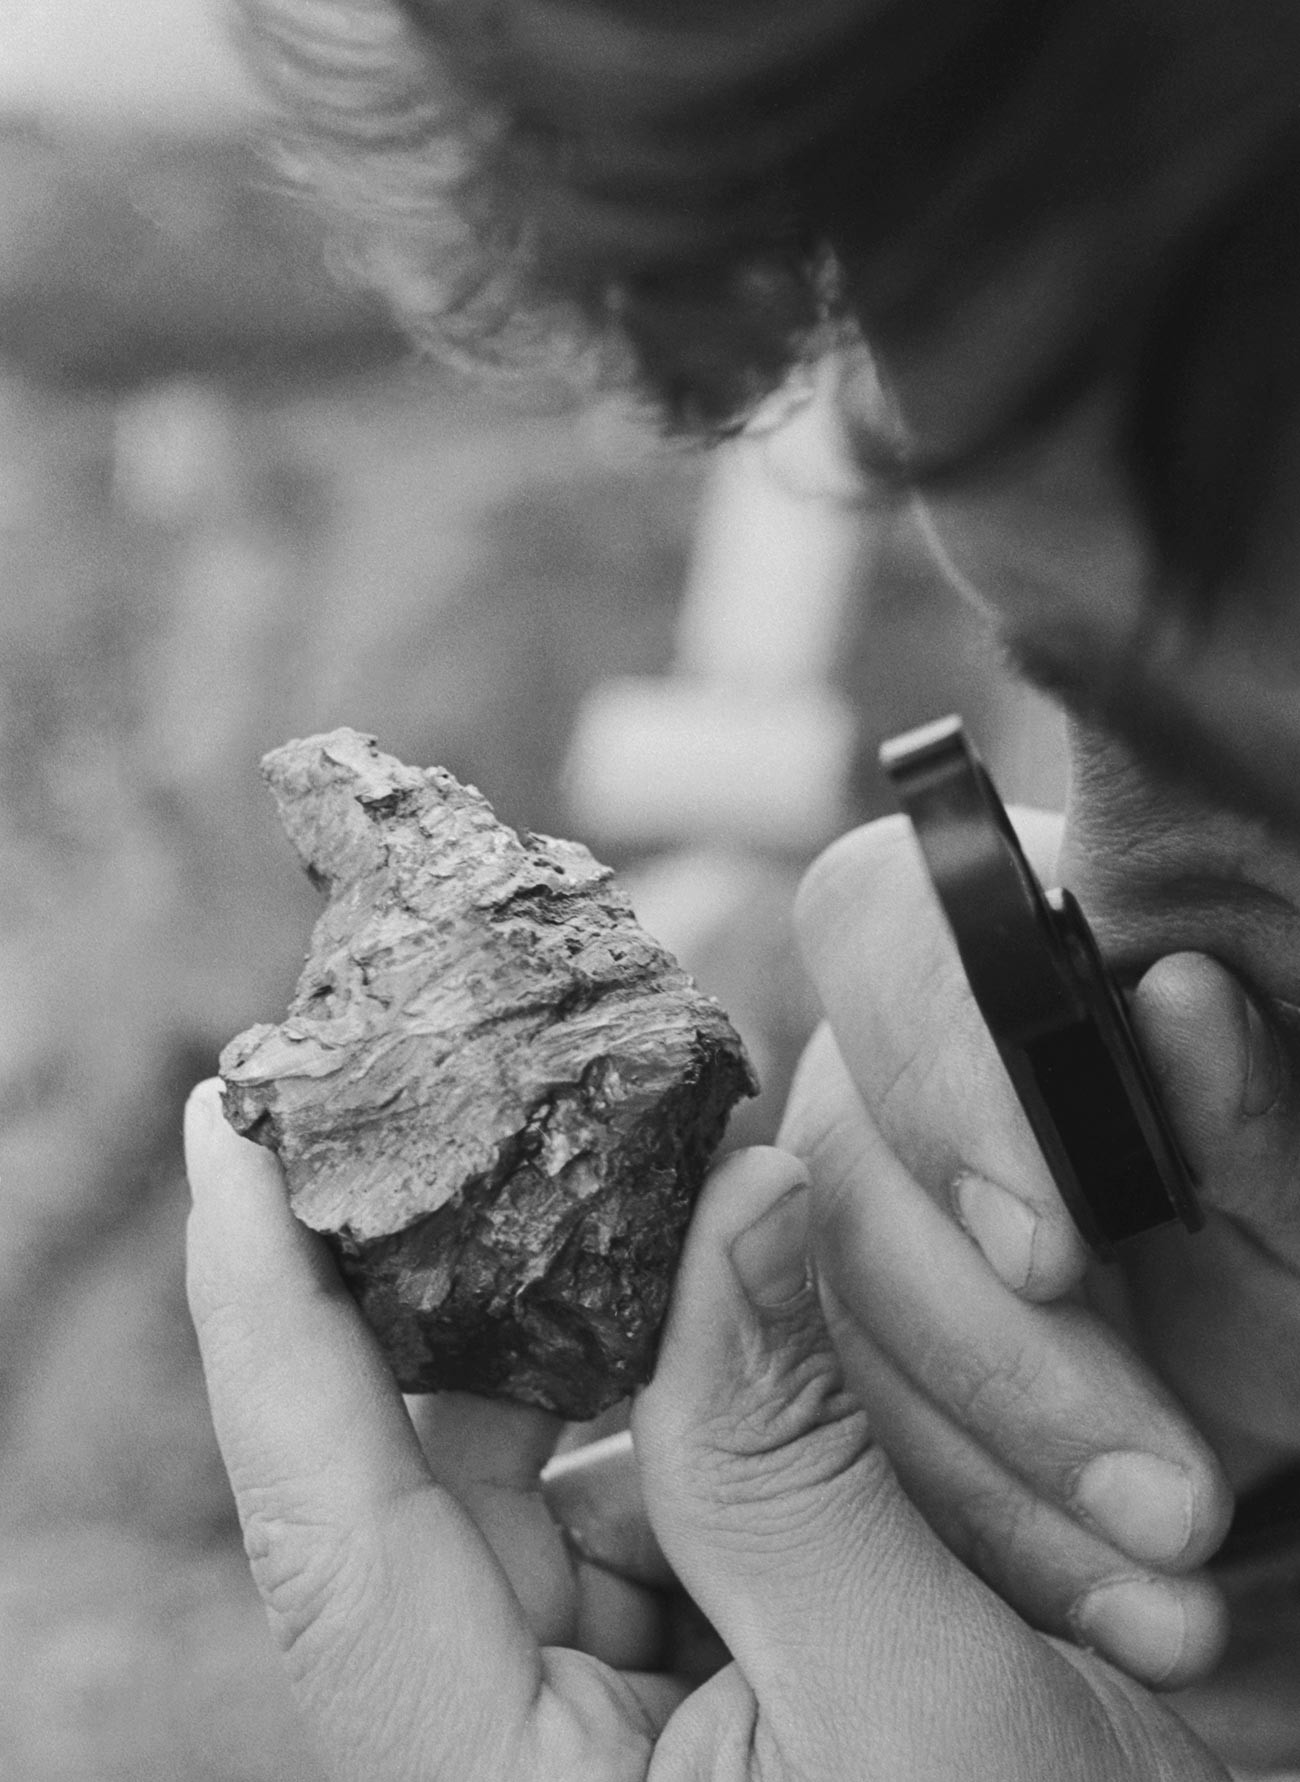 1990. Znanstvenik si ogleduje kos meteorita Sterlitamak.
